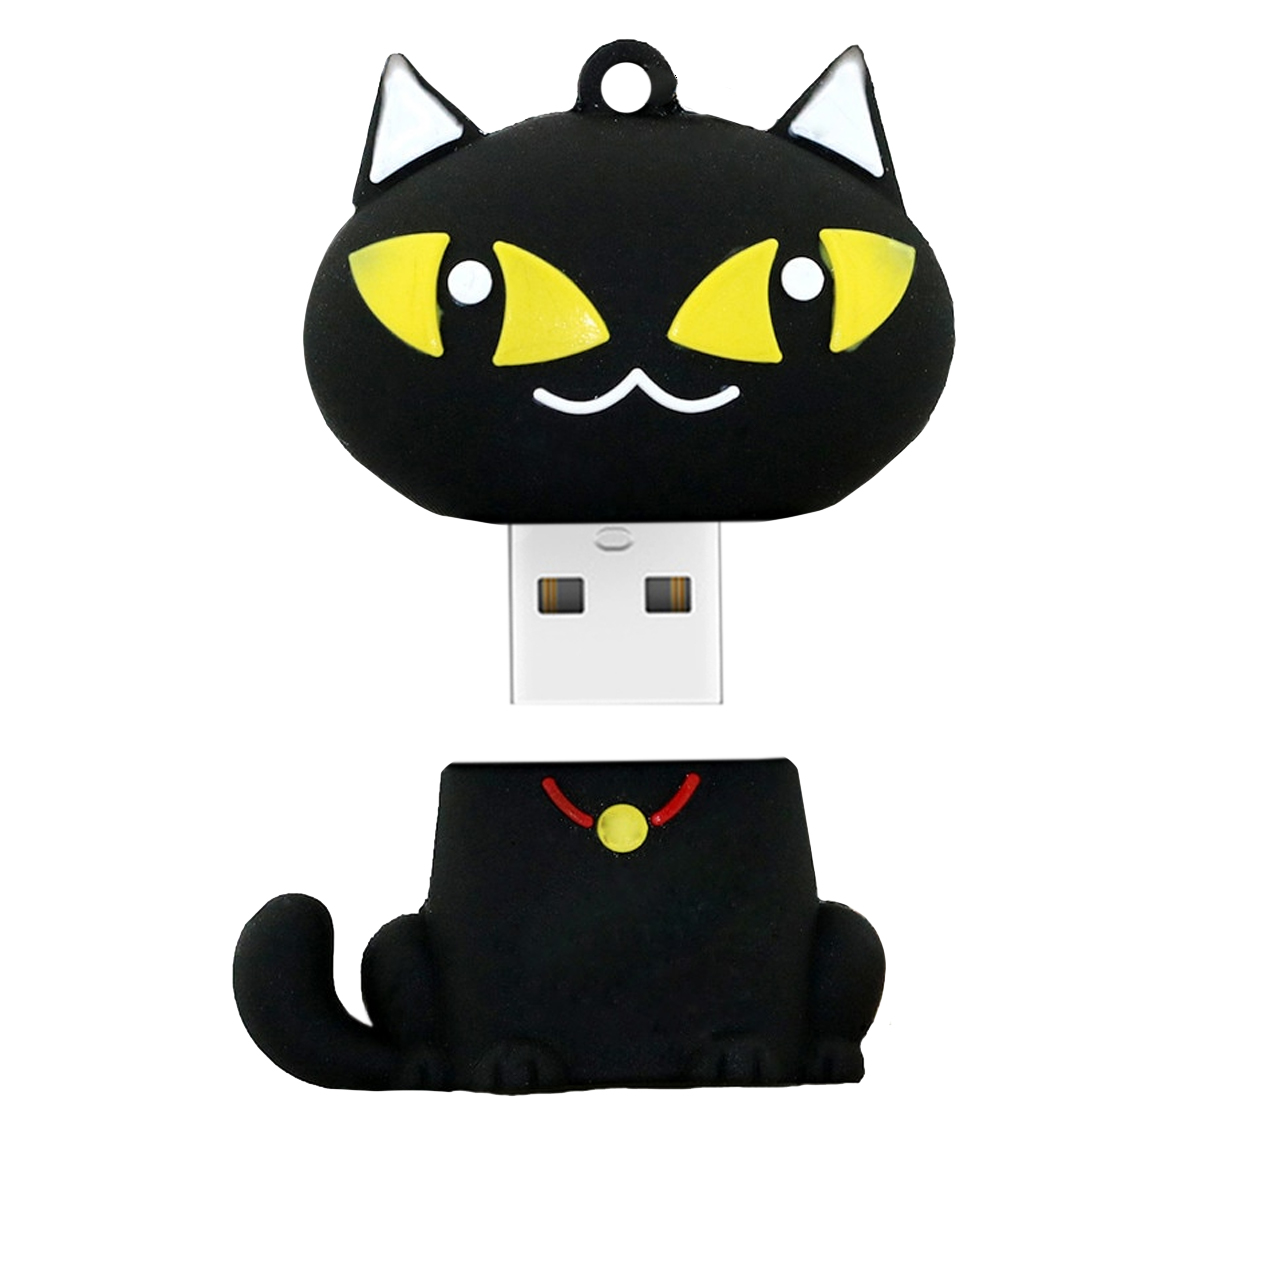 فلش مموری دایا دیتا طرح Black Cat مدل PF1054-USB3 ظرفیت 64 گیگابایت